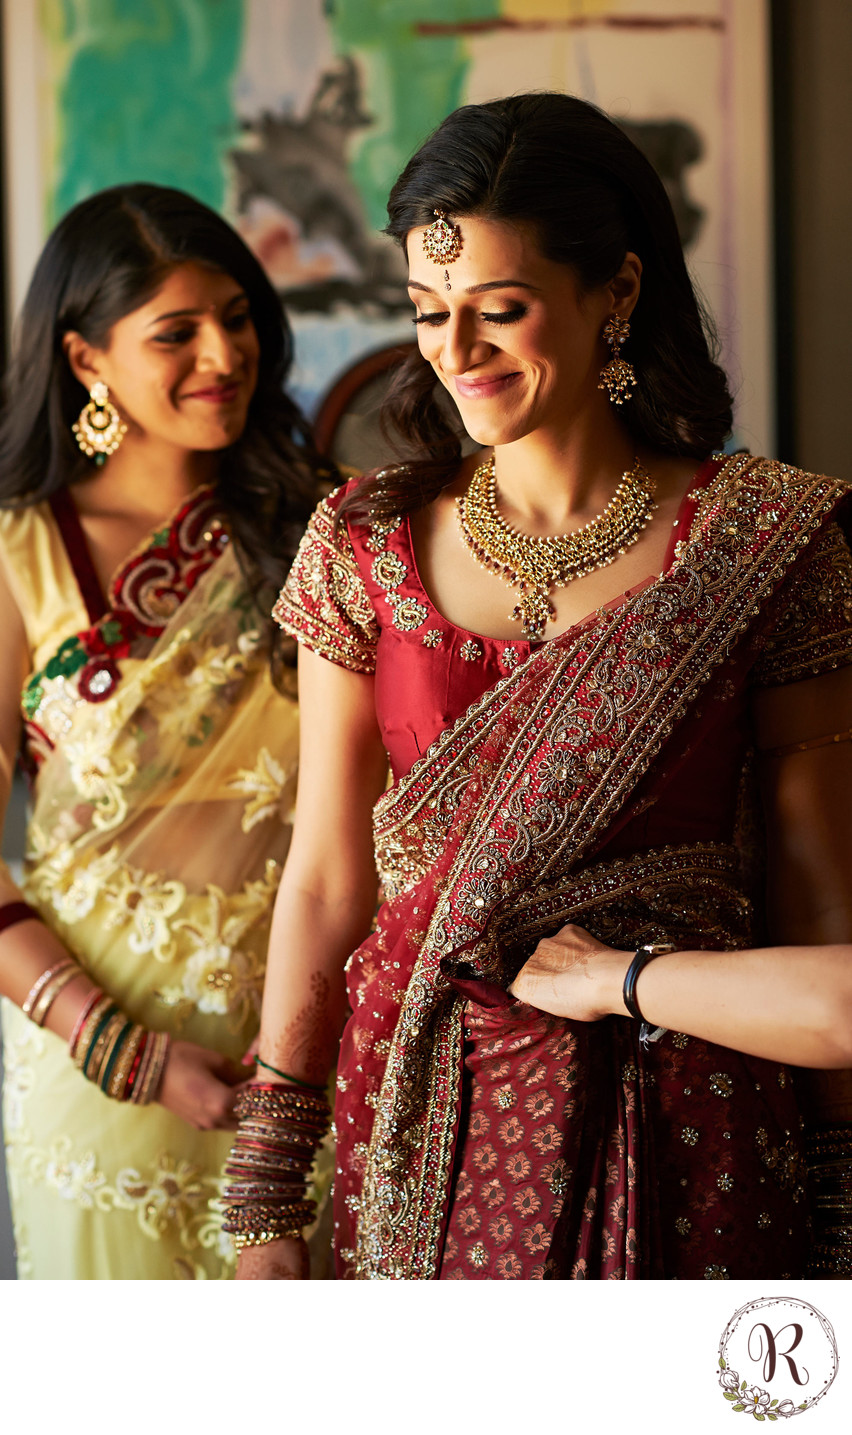 The Art of Sari Tying